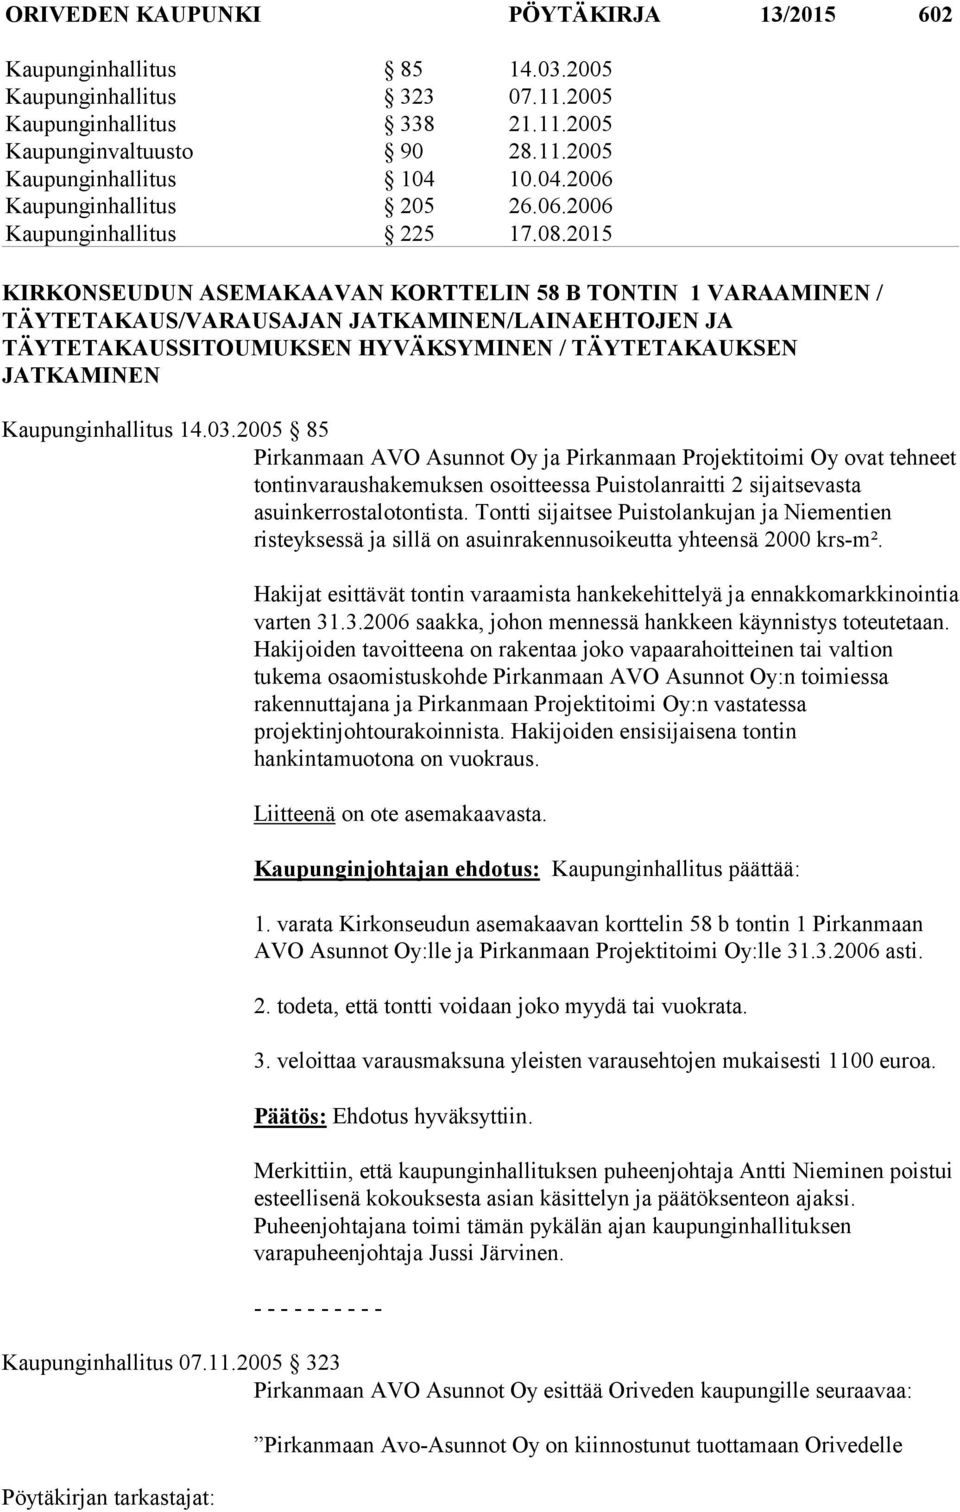 2015 KIRKONSEUDUN ASEMAKAAVAN KORTTELIN 58 B TONTIN 1 VARAAMINEN / TÄYTETAKAUS/VARAUSAJAN JATKAMINEN/LAINAEHTOJEN JA TÄYTETAKAUSSITOUMUKSEN HYVÄKSYMINEN / TÄYTETAKAUKSEN JATKAMINEN Kaupunginhallitus